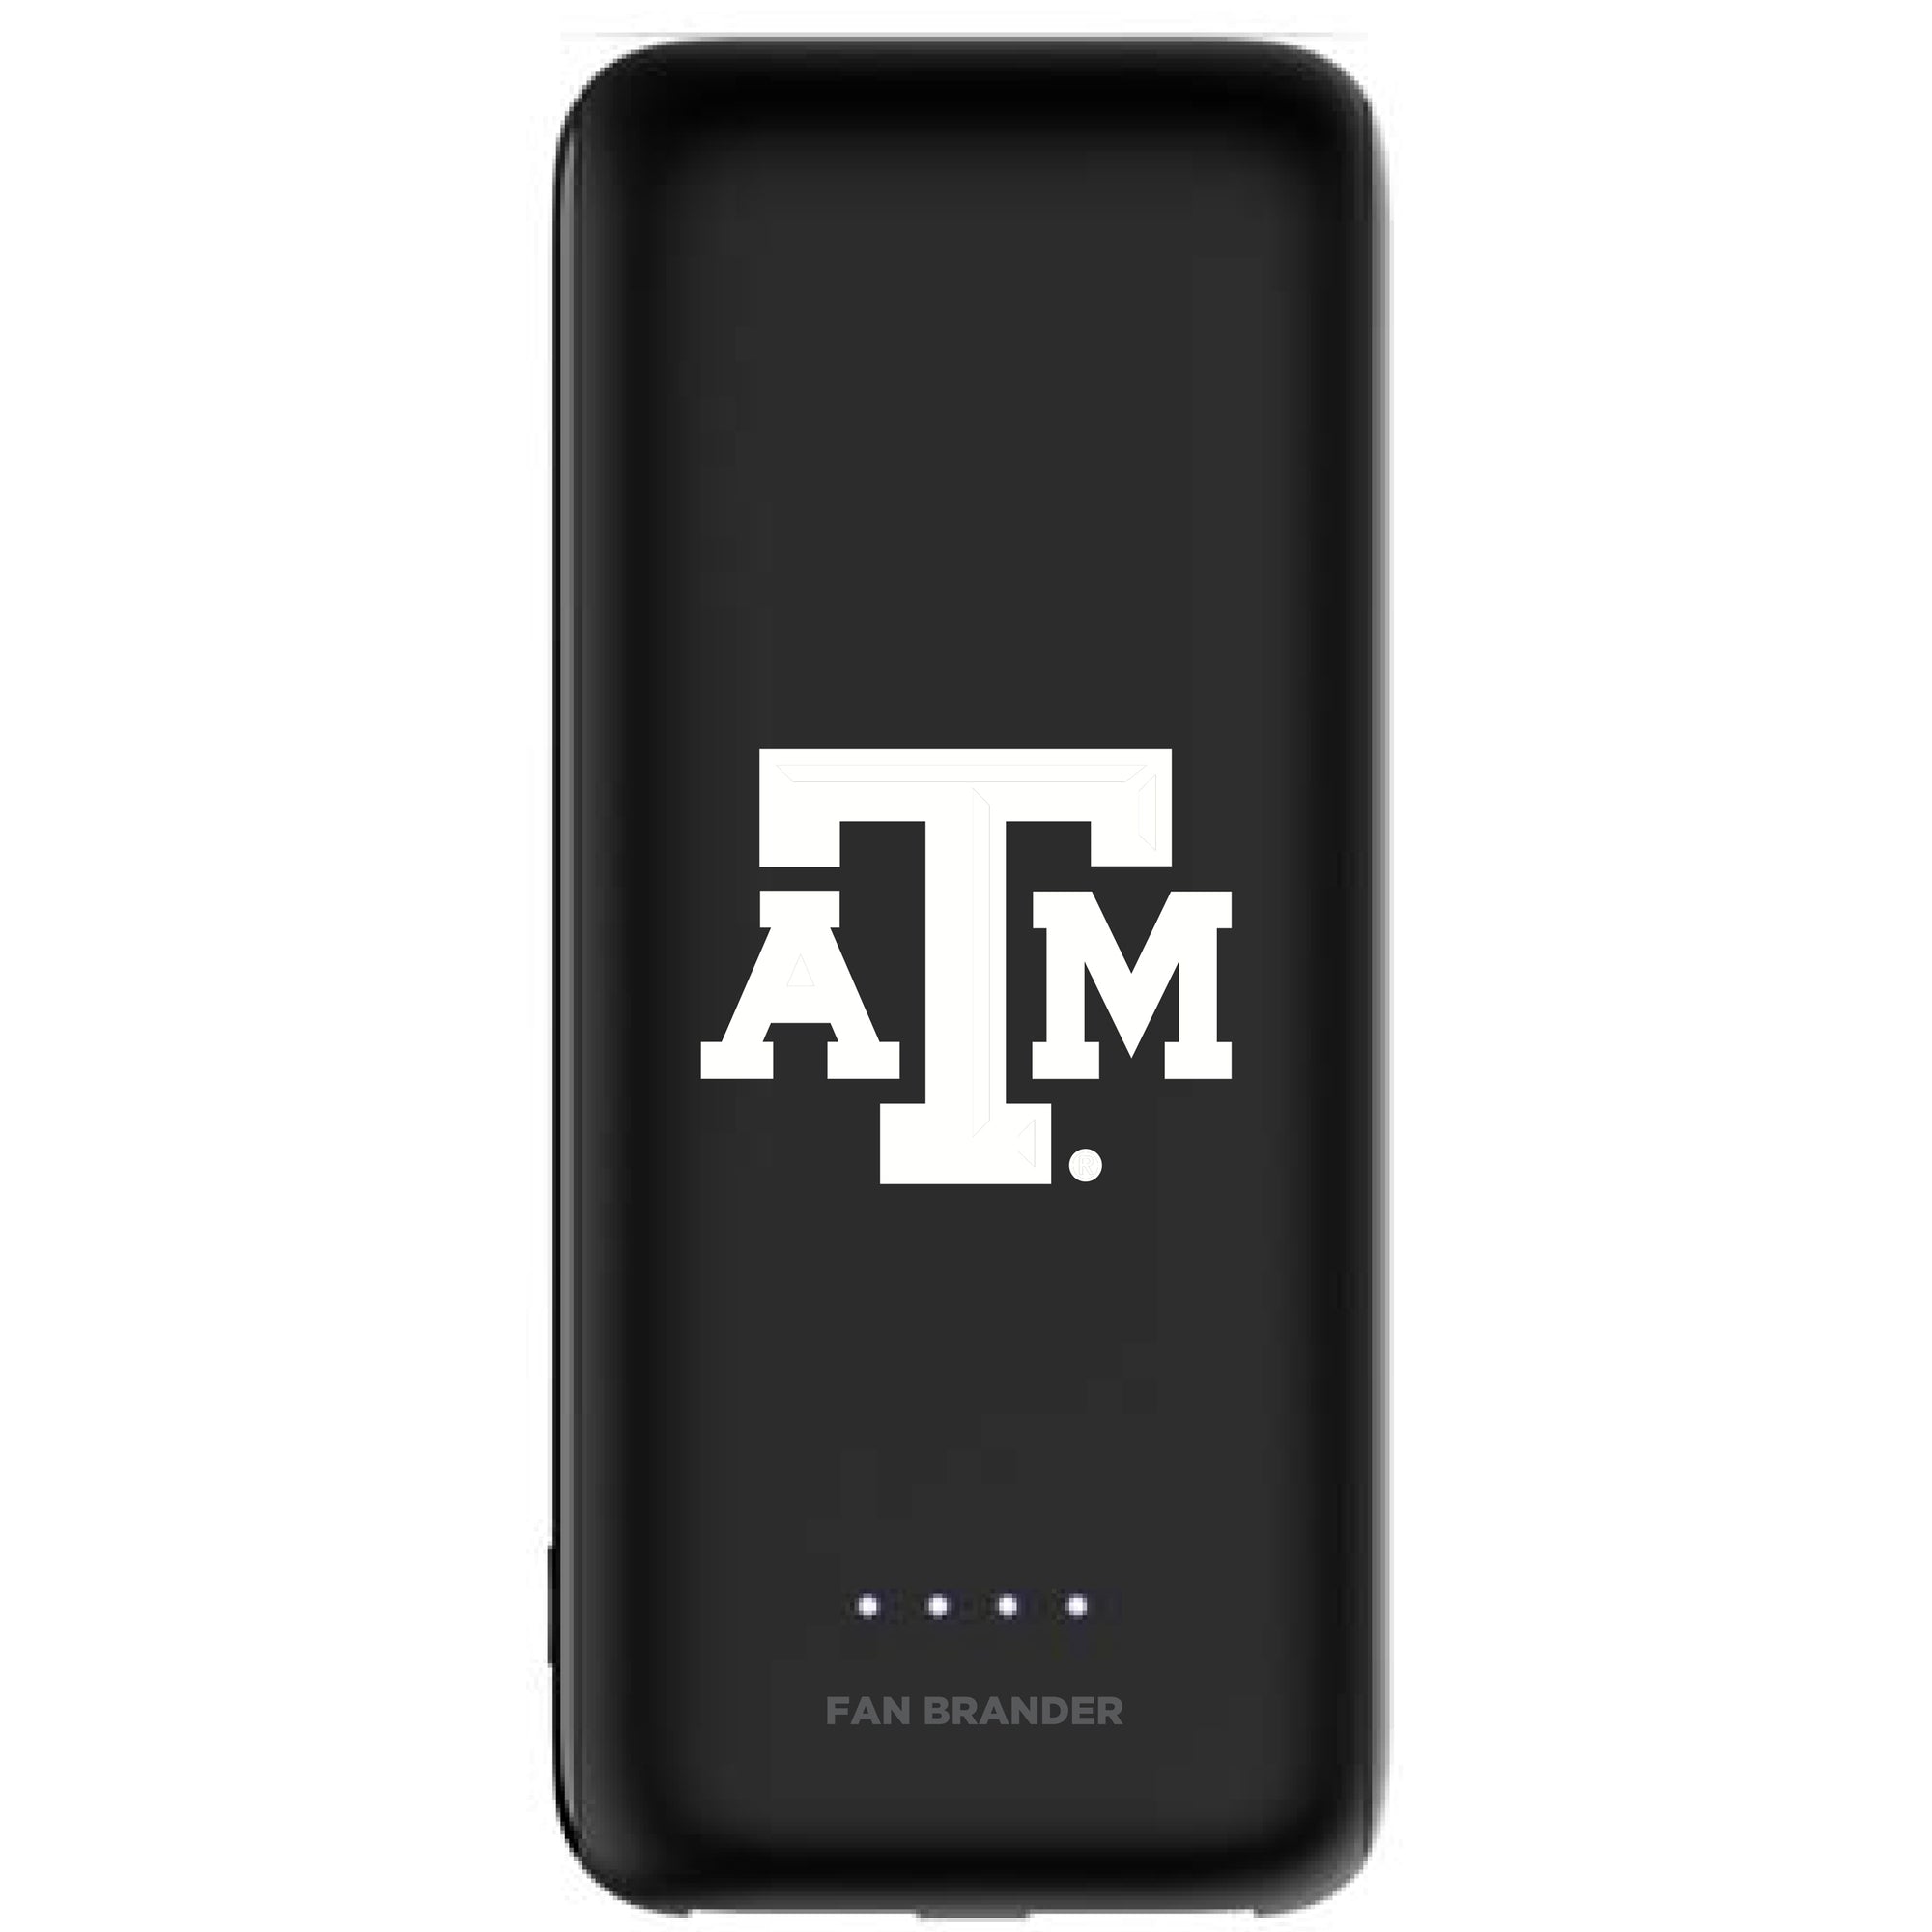 Texas A&M Aggies Power Boost Mini 5,200 mAH